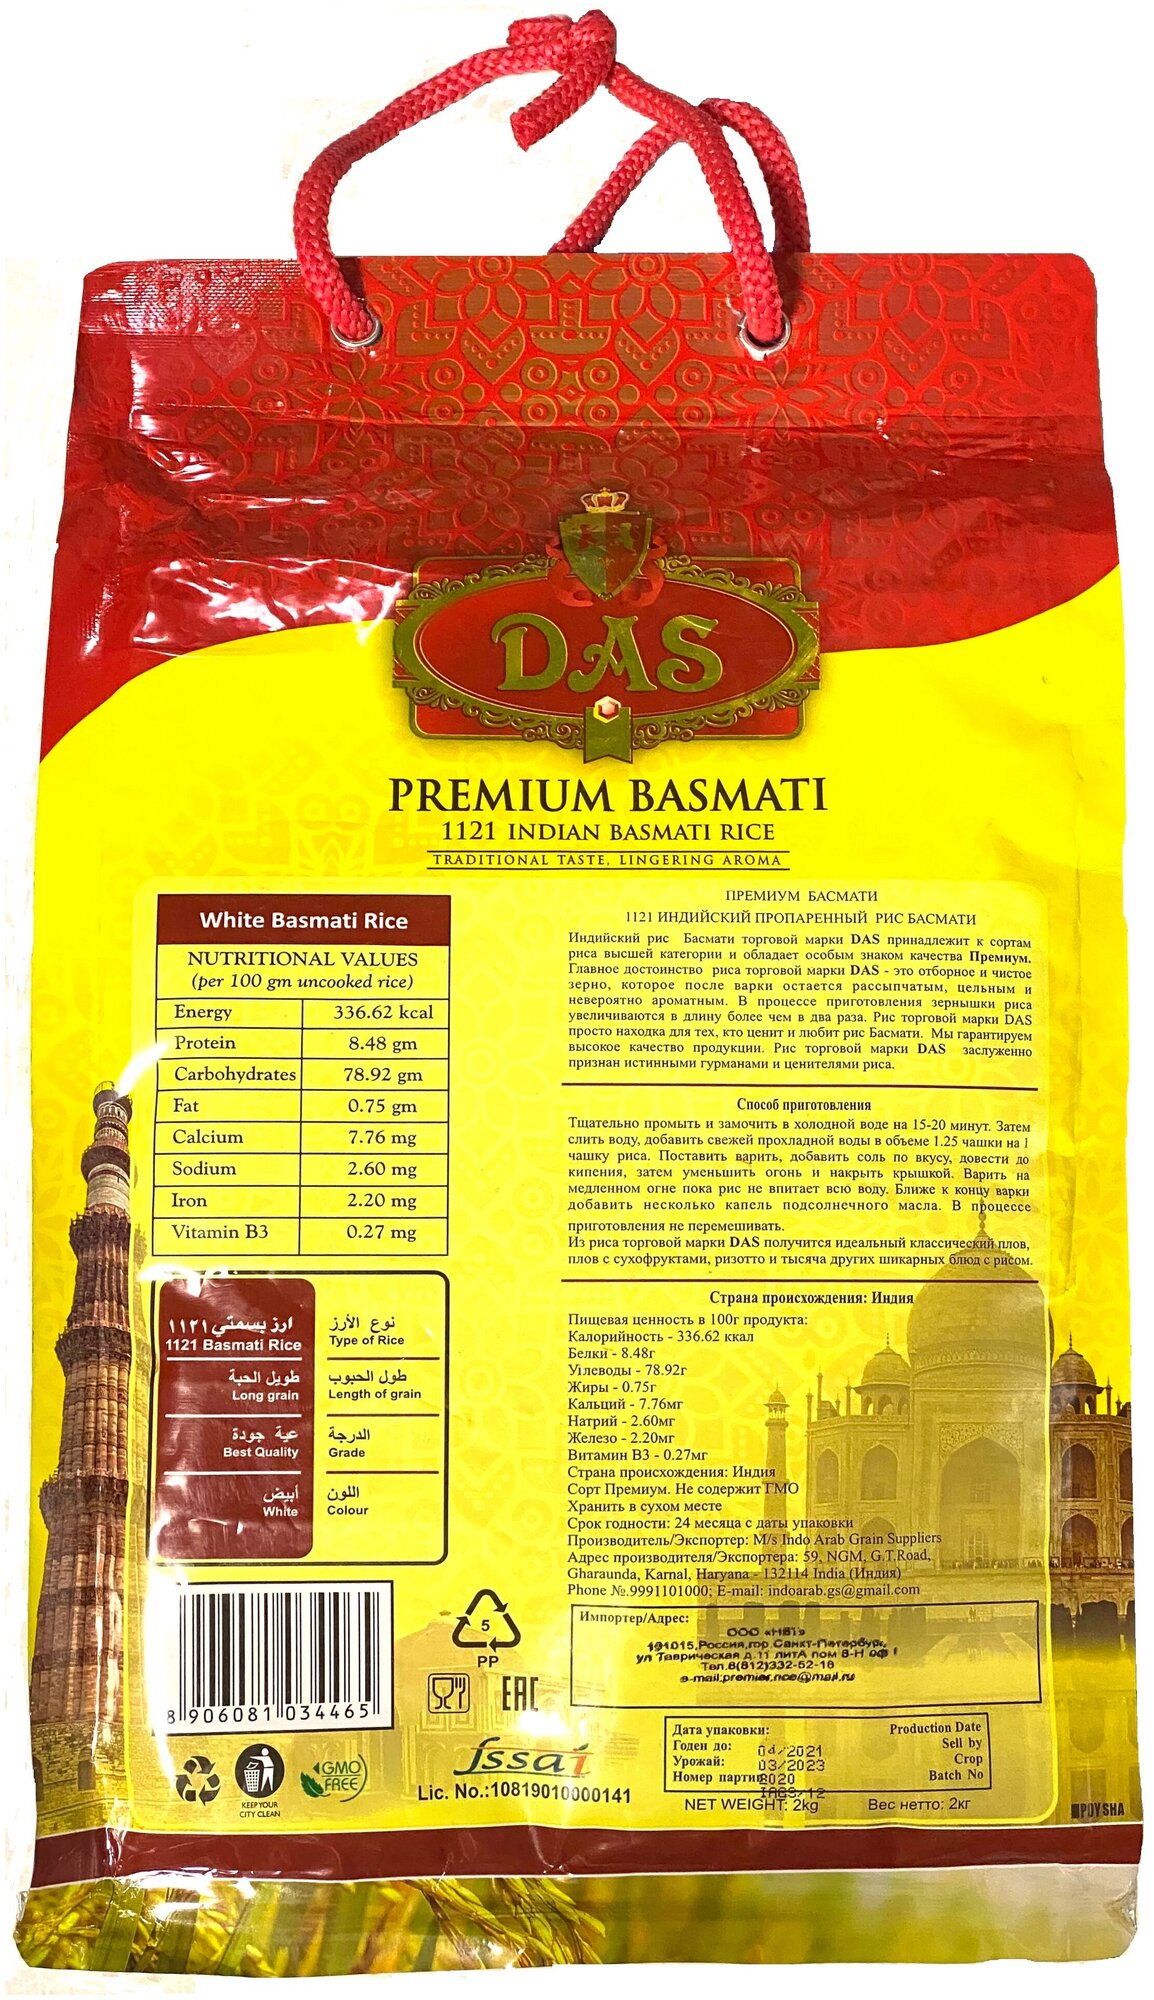 Рис индийский басмати DAS PREMIUM NEW длиннозерный пропаренный для плова 2 кг упаковка зип-пакет